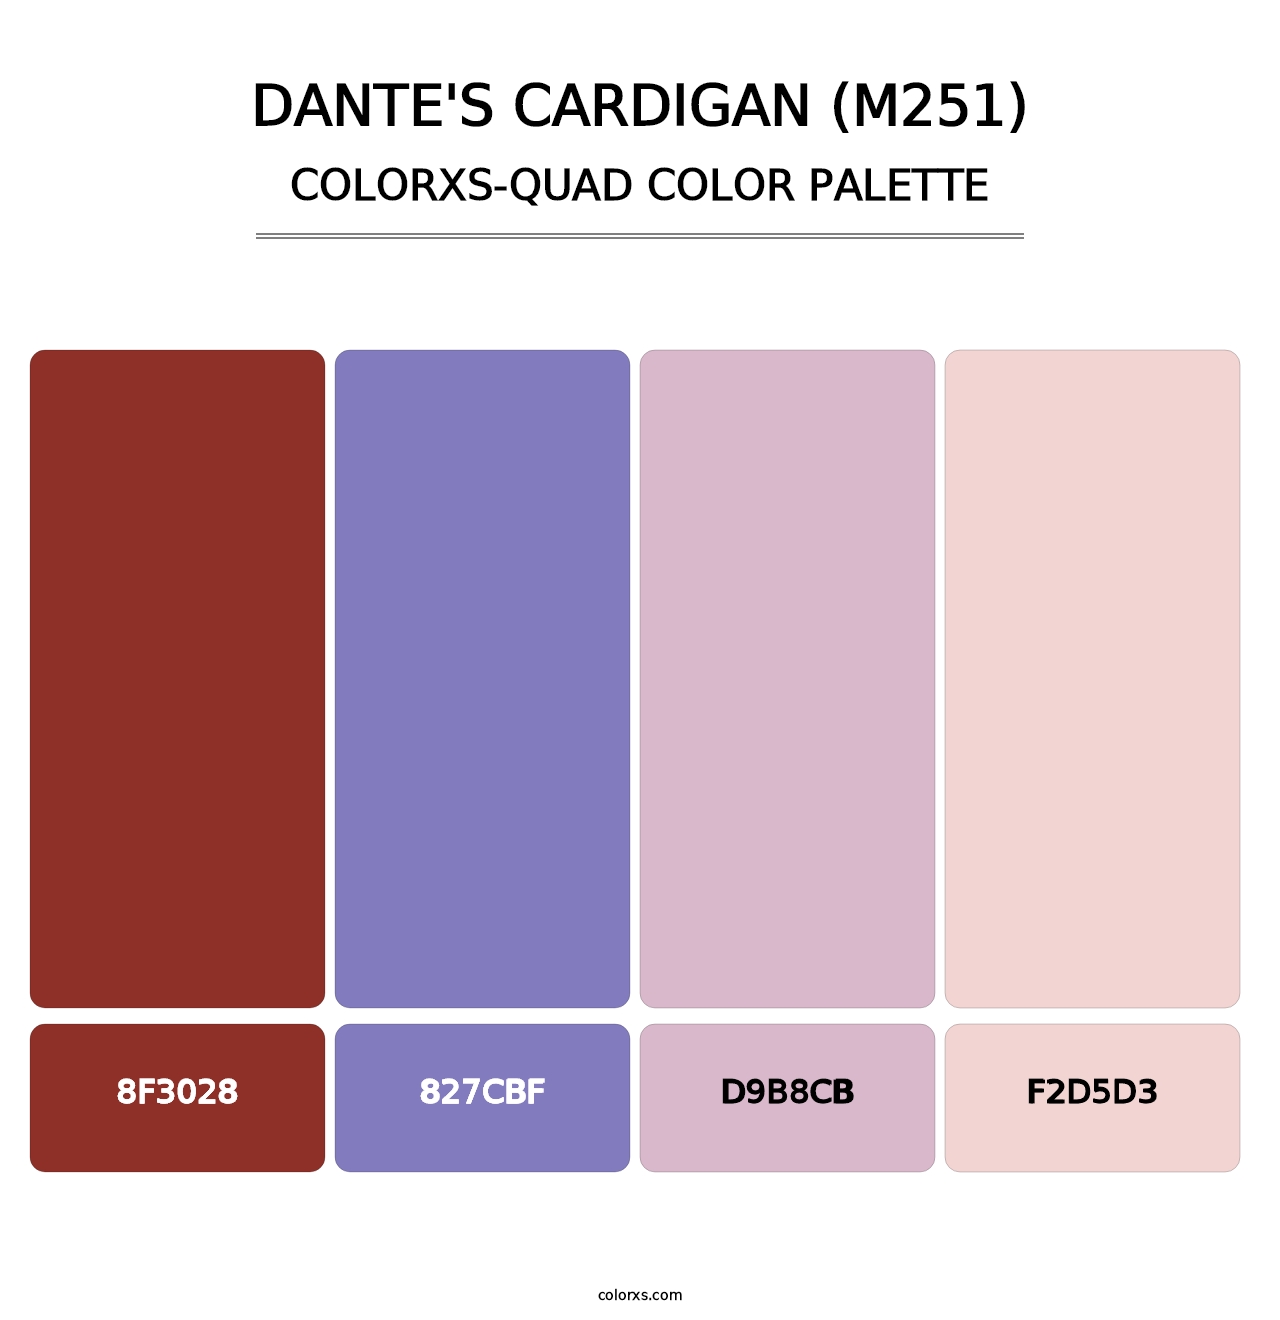 Dante's Cardigan (M251) - Colorxs Quad Palette